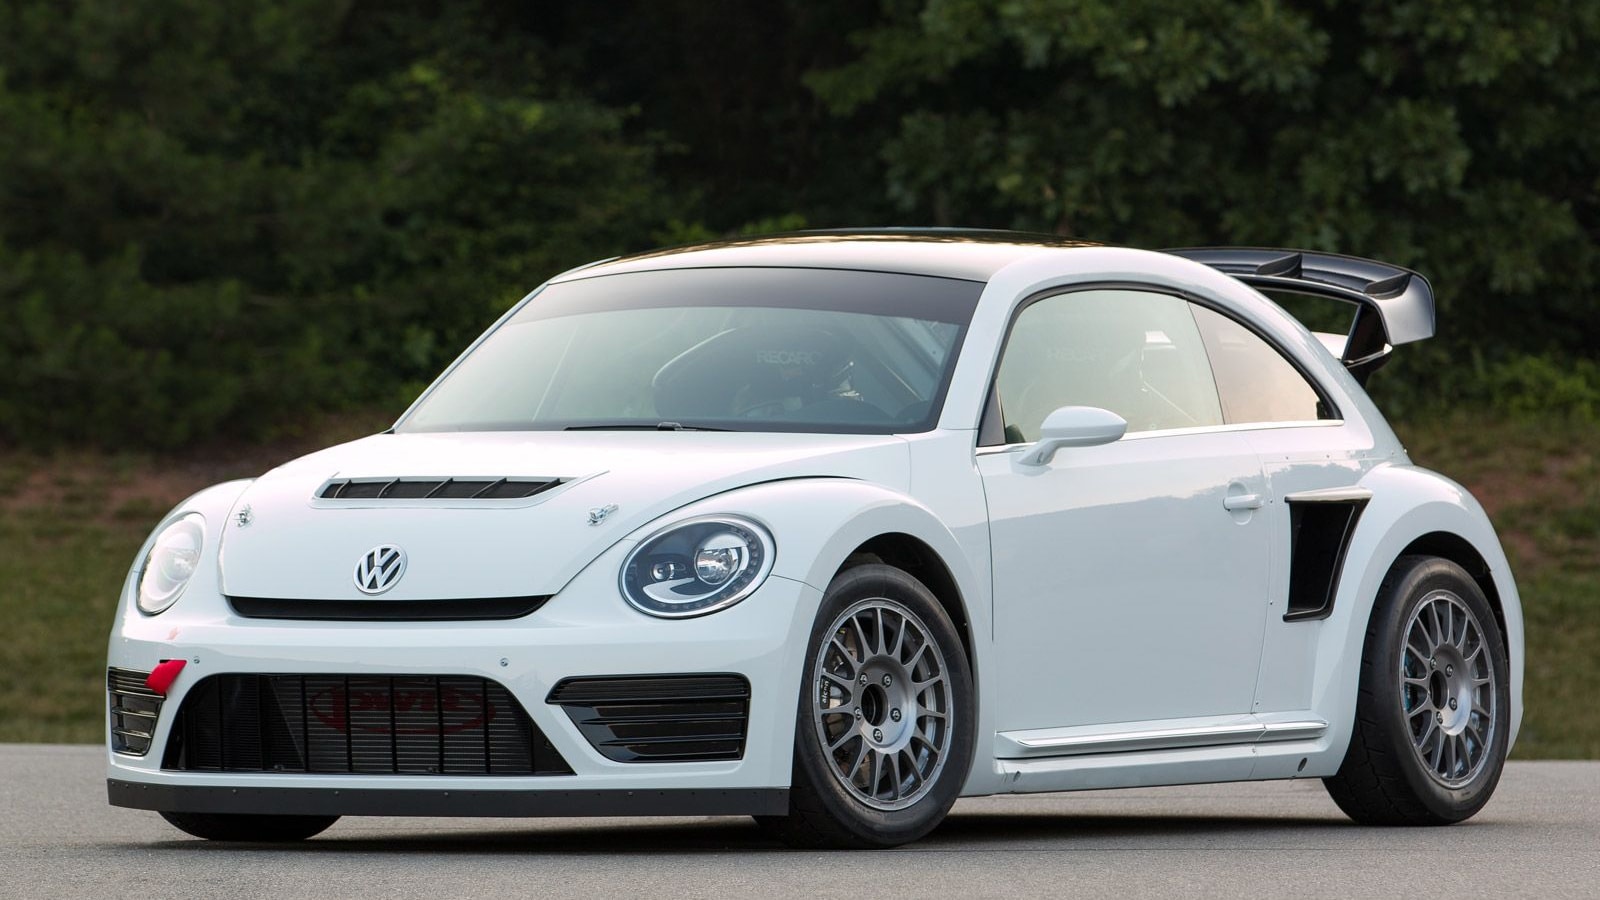 2014 Volkswagen Beetle Global Rallycross Championship car